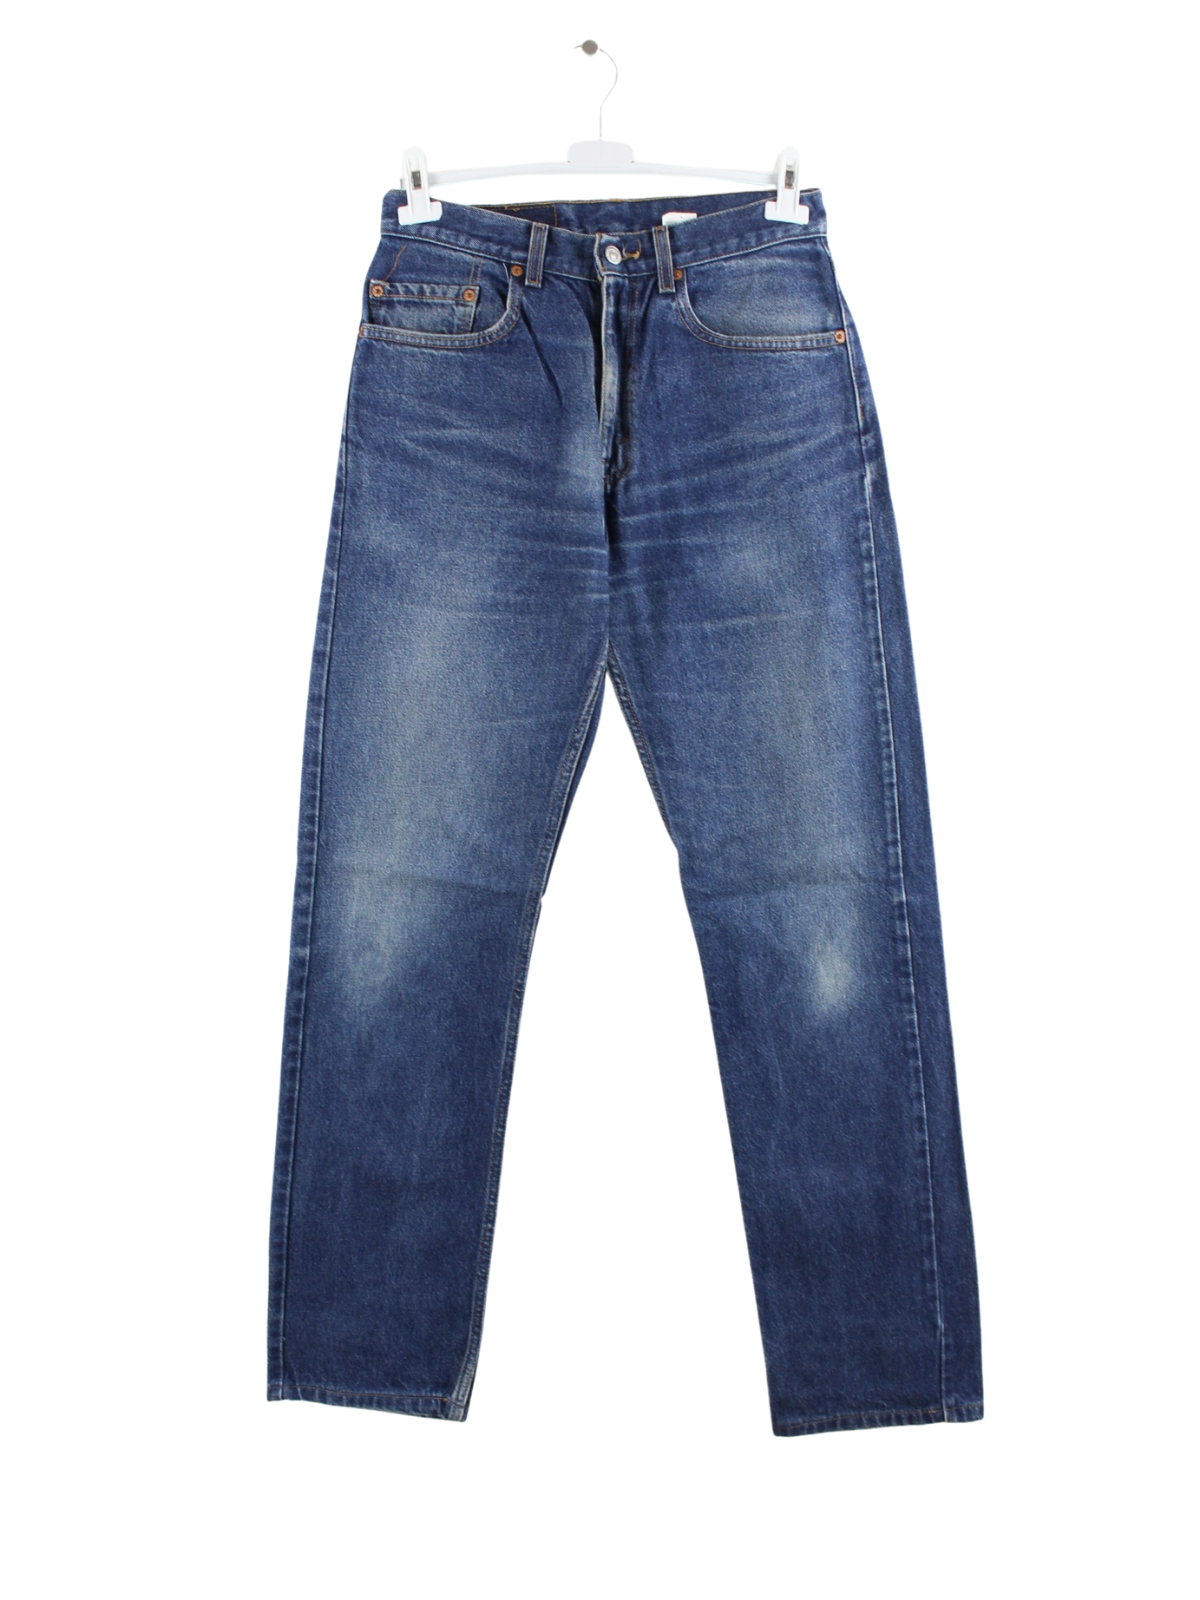 Levi's 505 Jeans Blau W31 L34